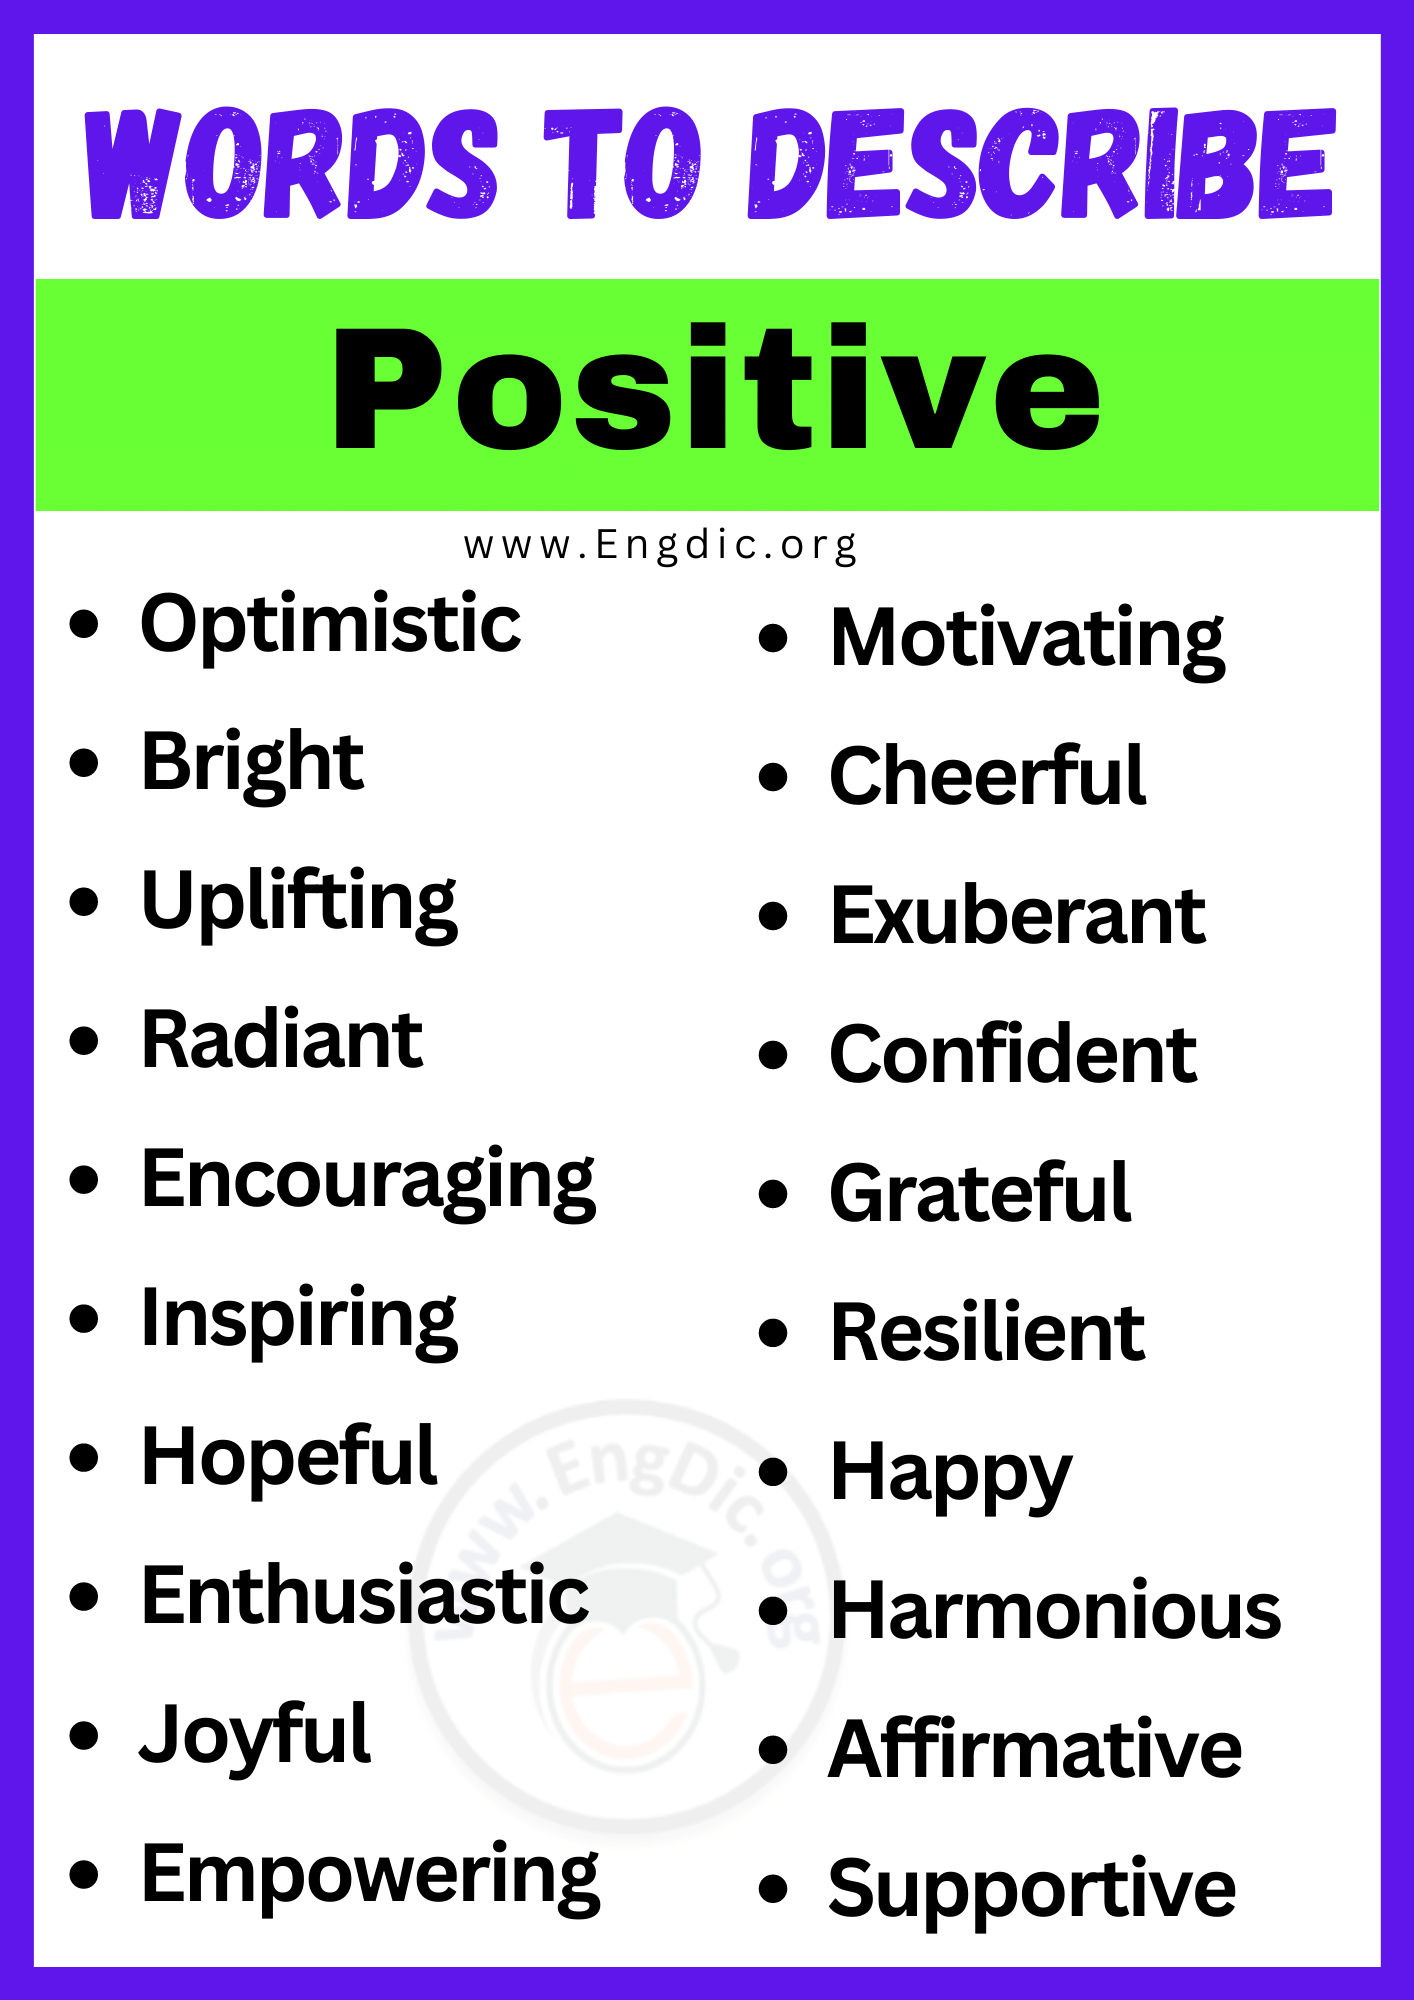 Words to Describe Positive